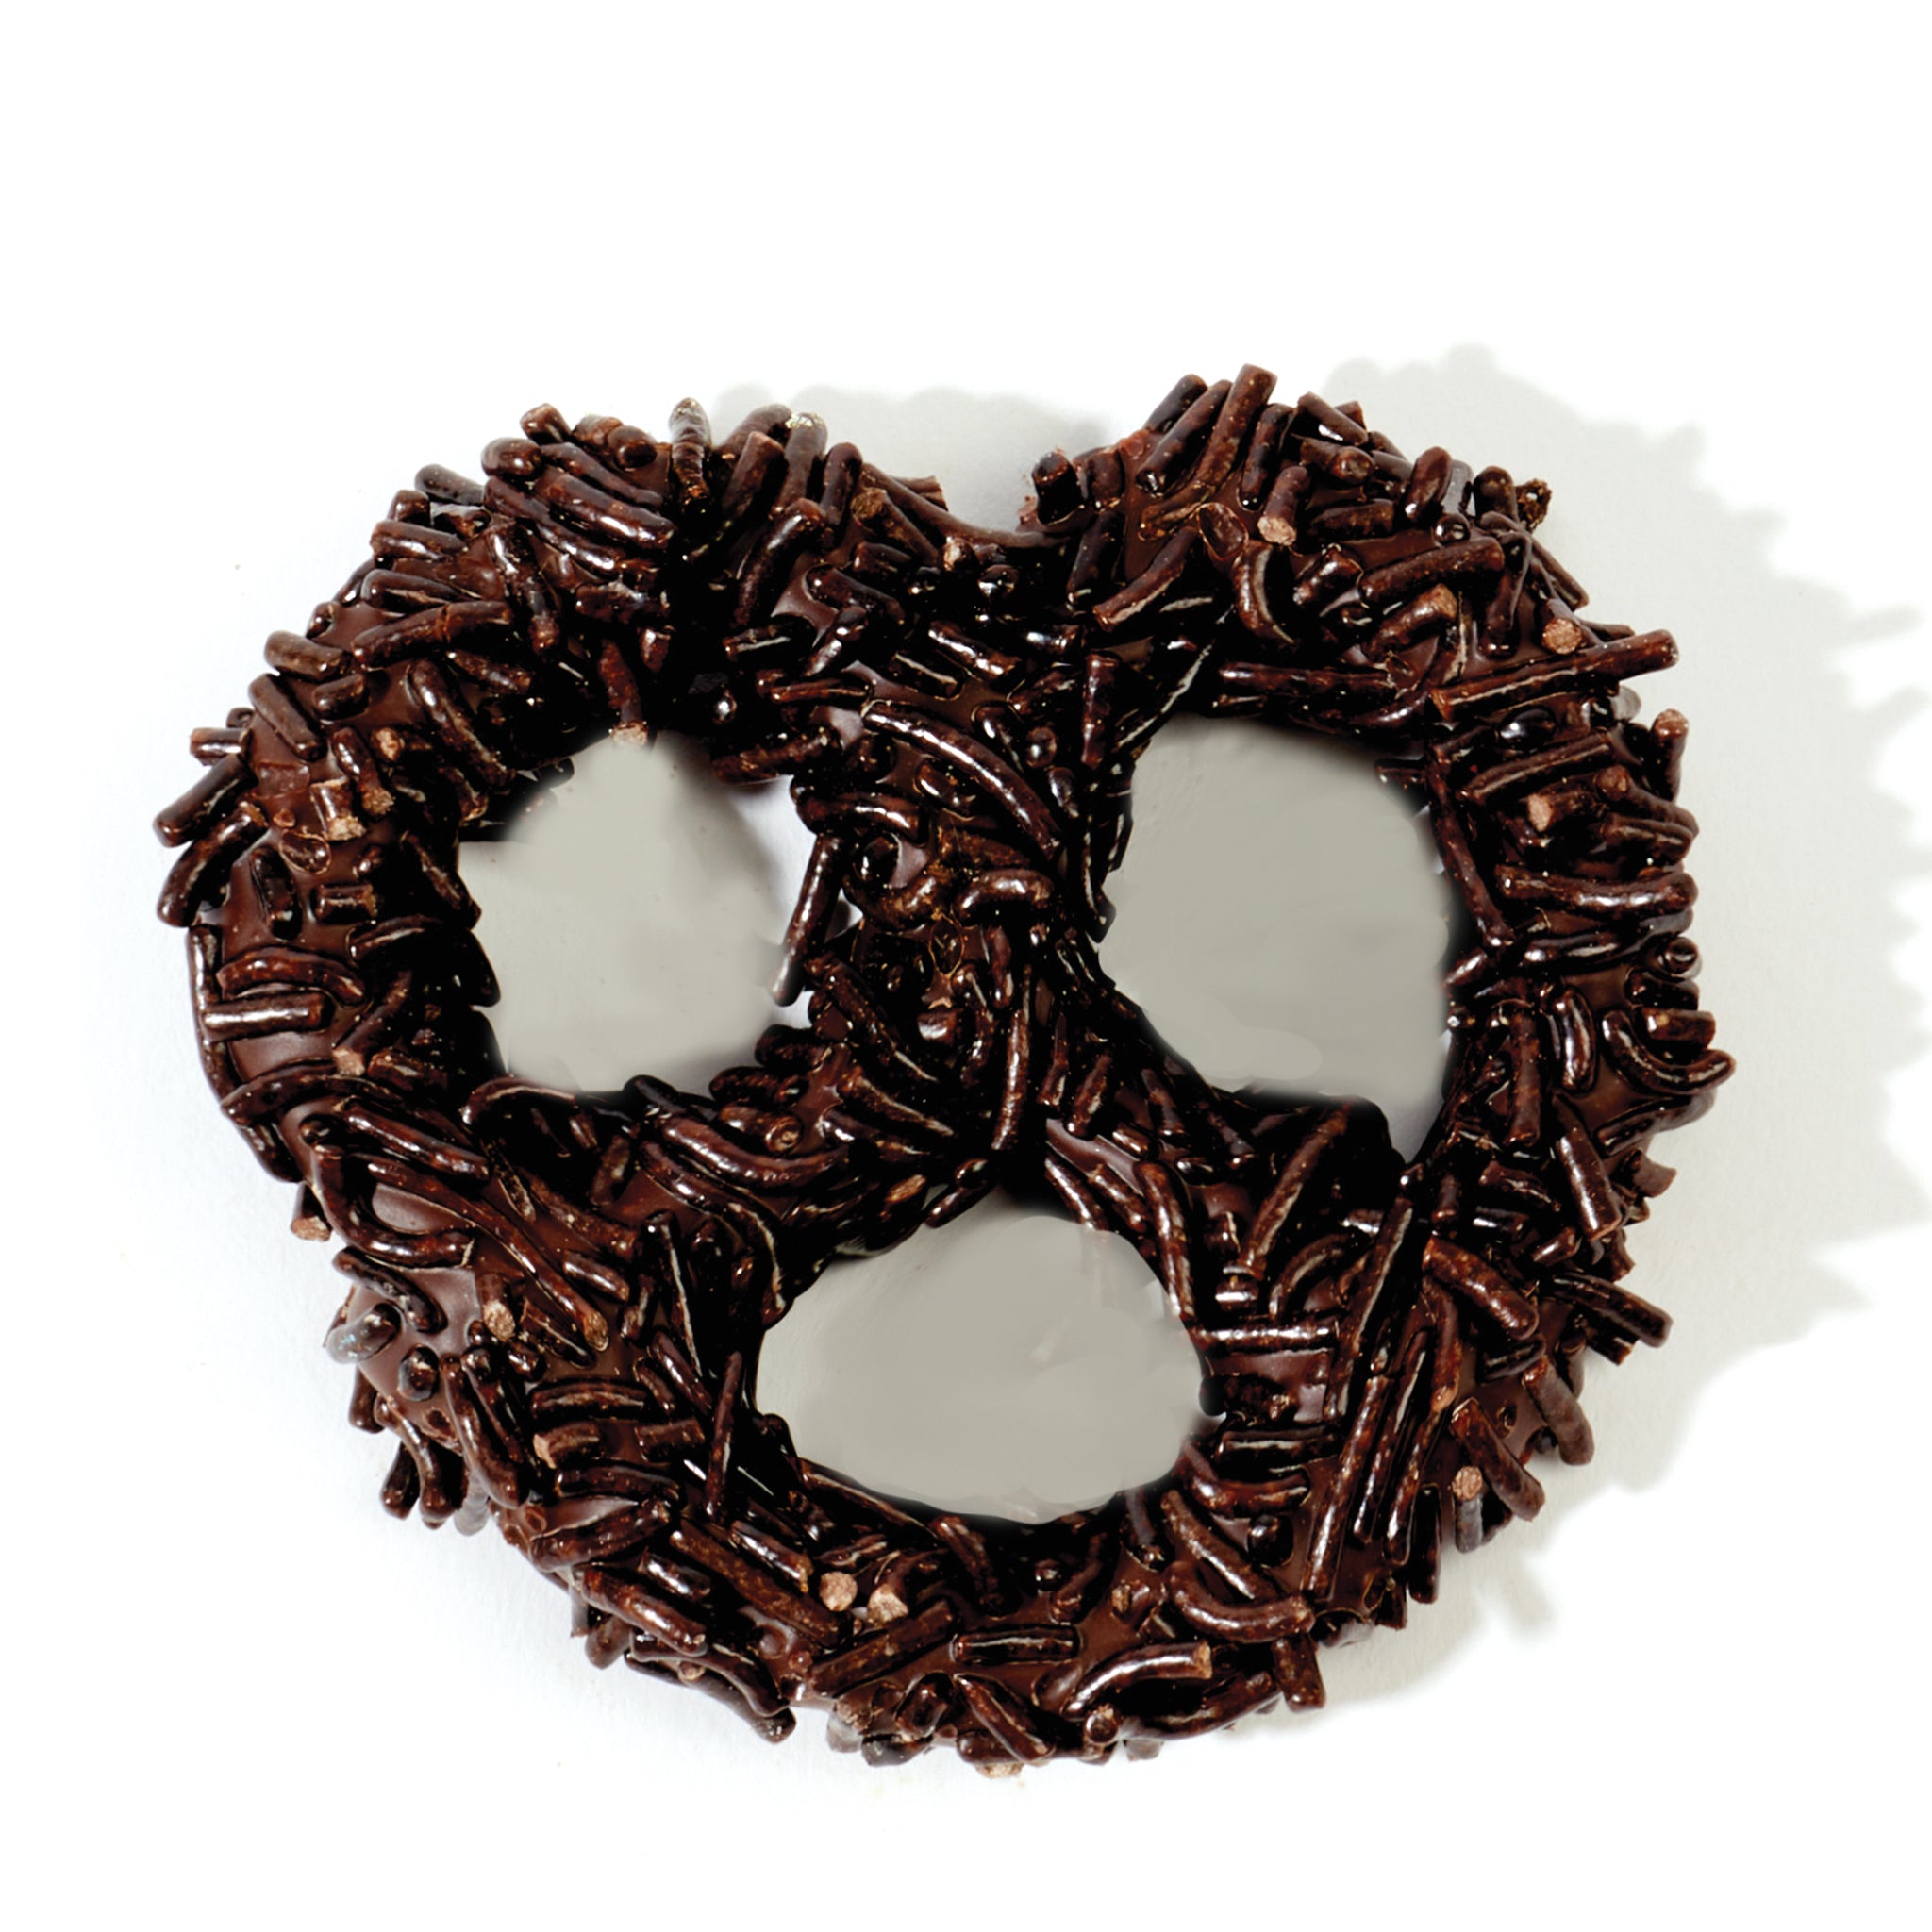 Chocolate Pretzel - Chocolate Sprinkles